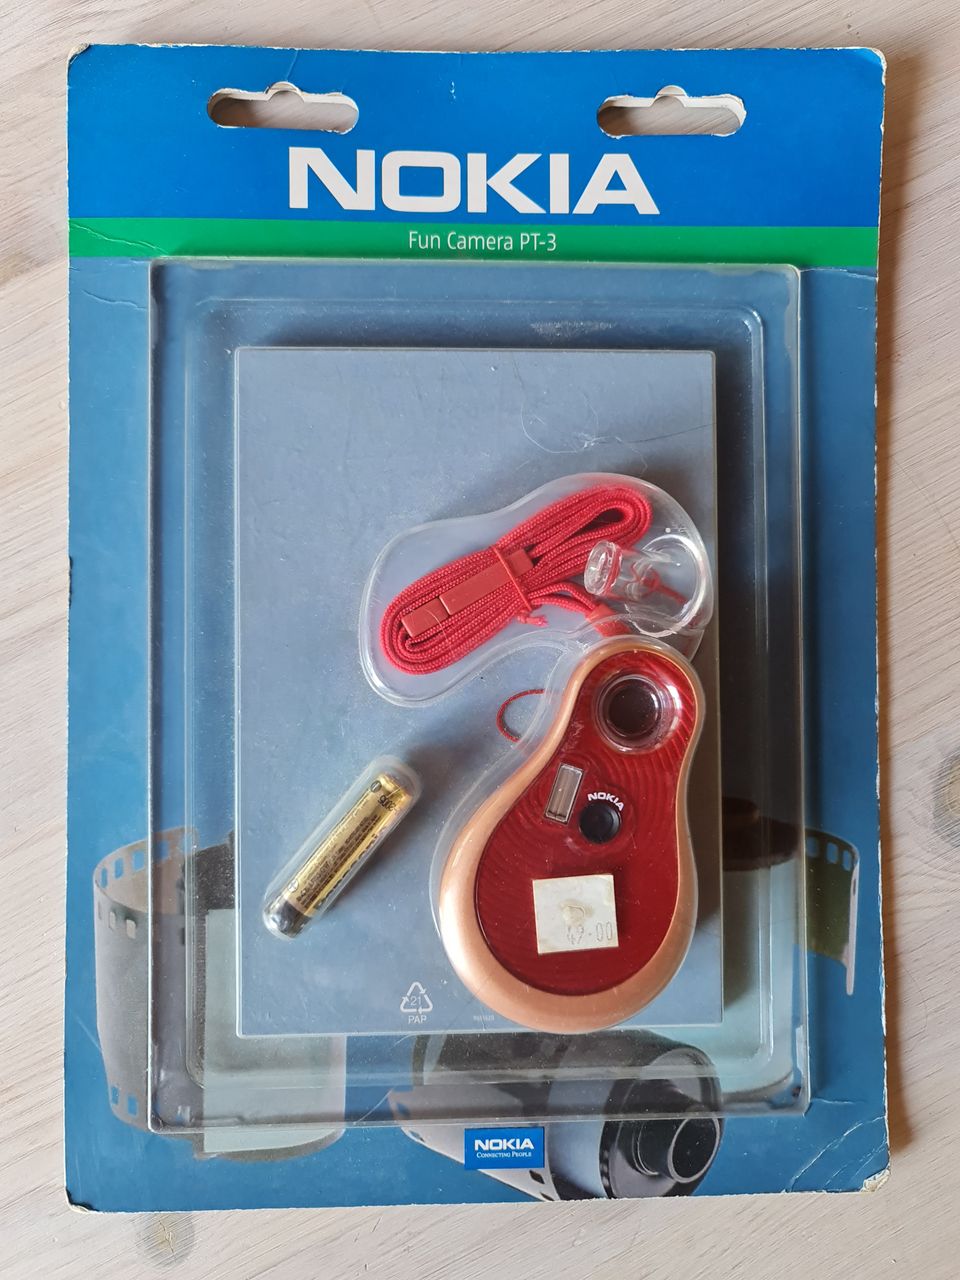 Nokia Fun Camera PT-3